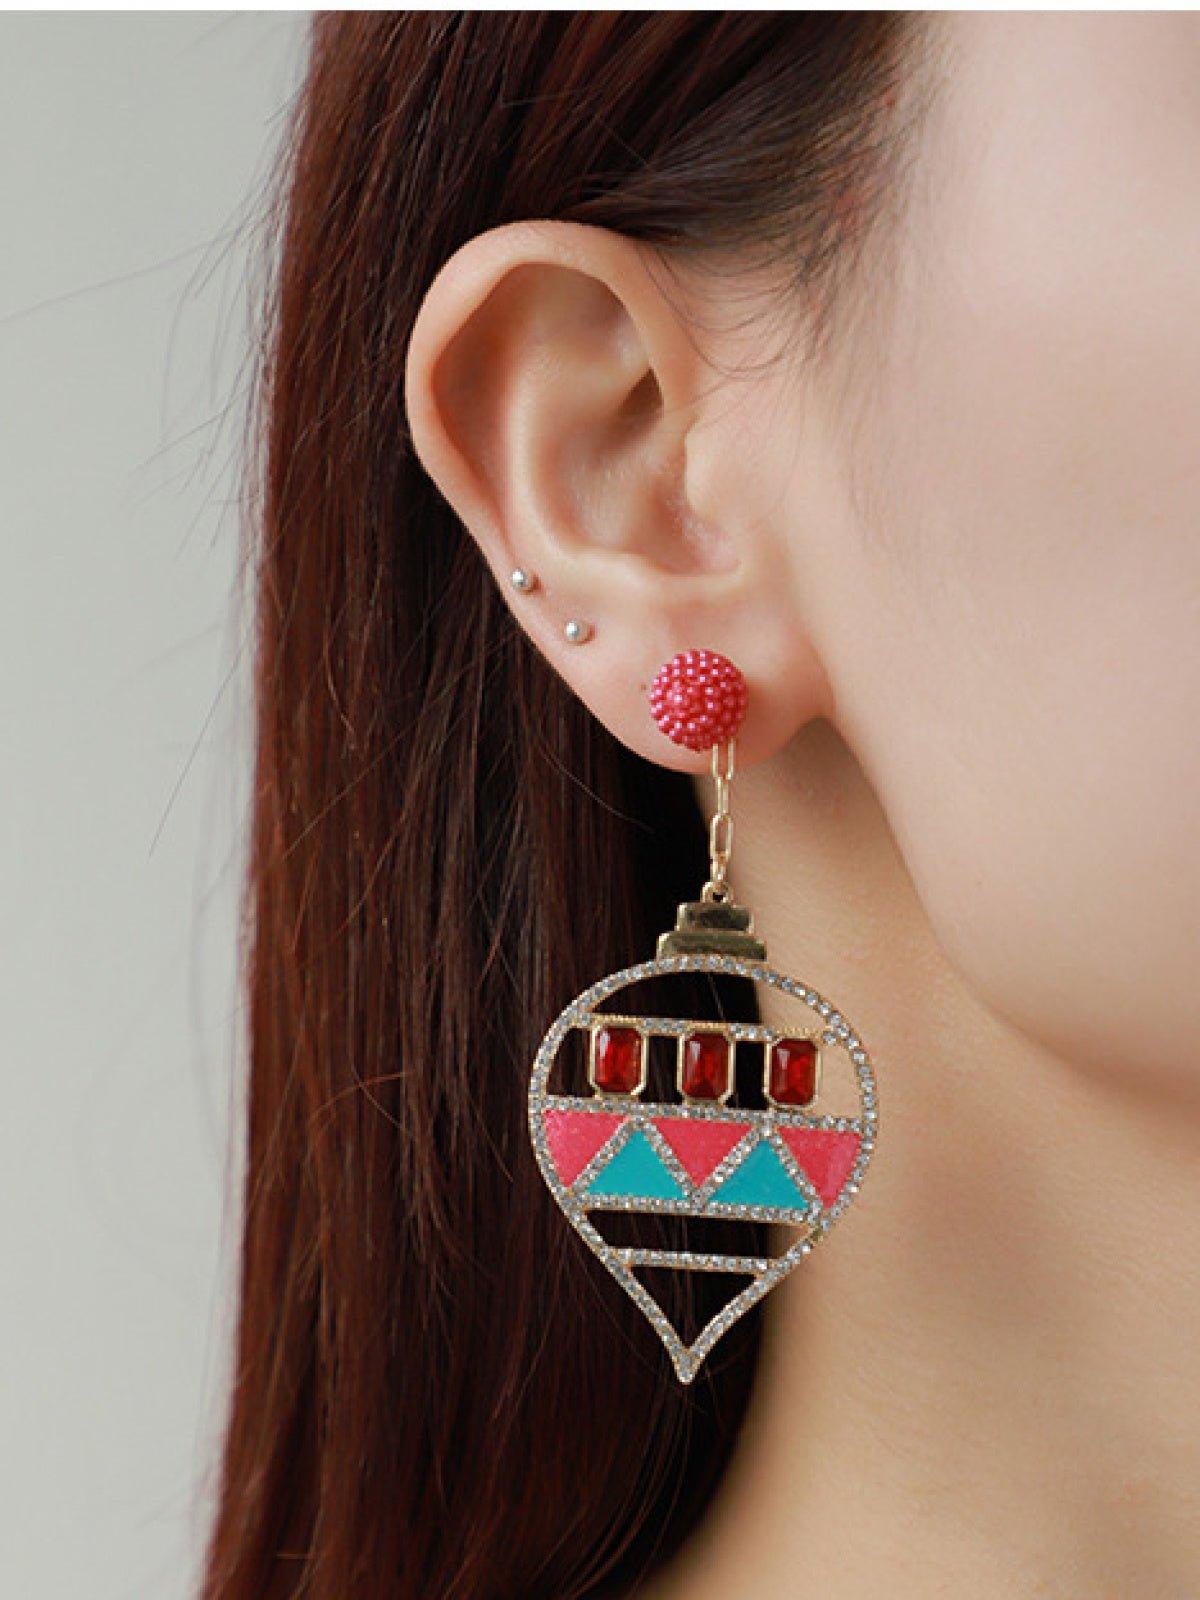 Dangle Earrings with Rhinestones and Enamel in a Teardrop Shape